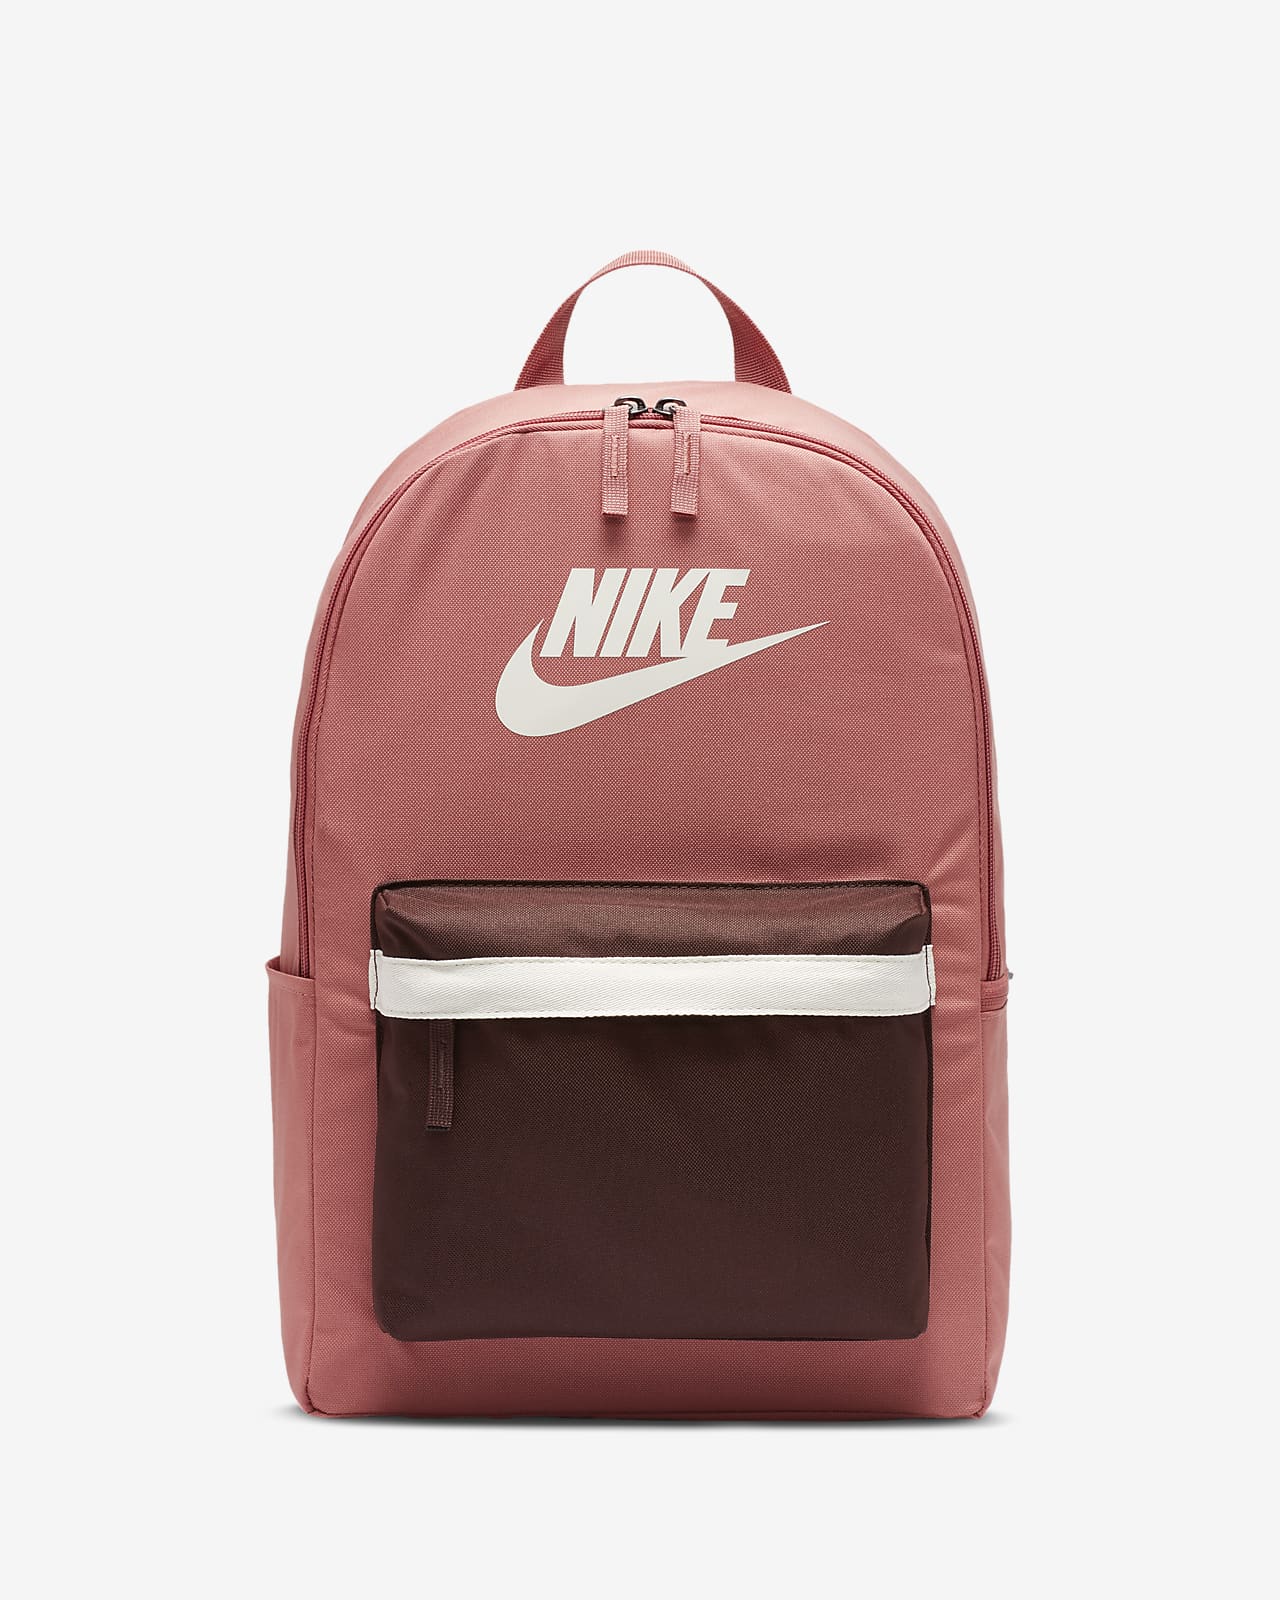 nike 2.0 backpack